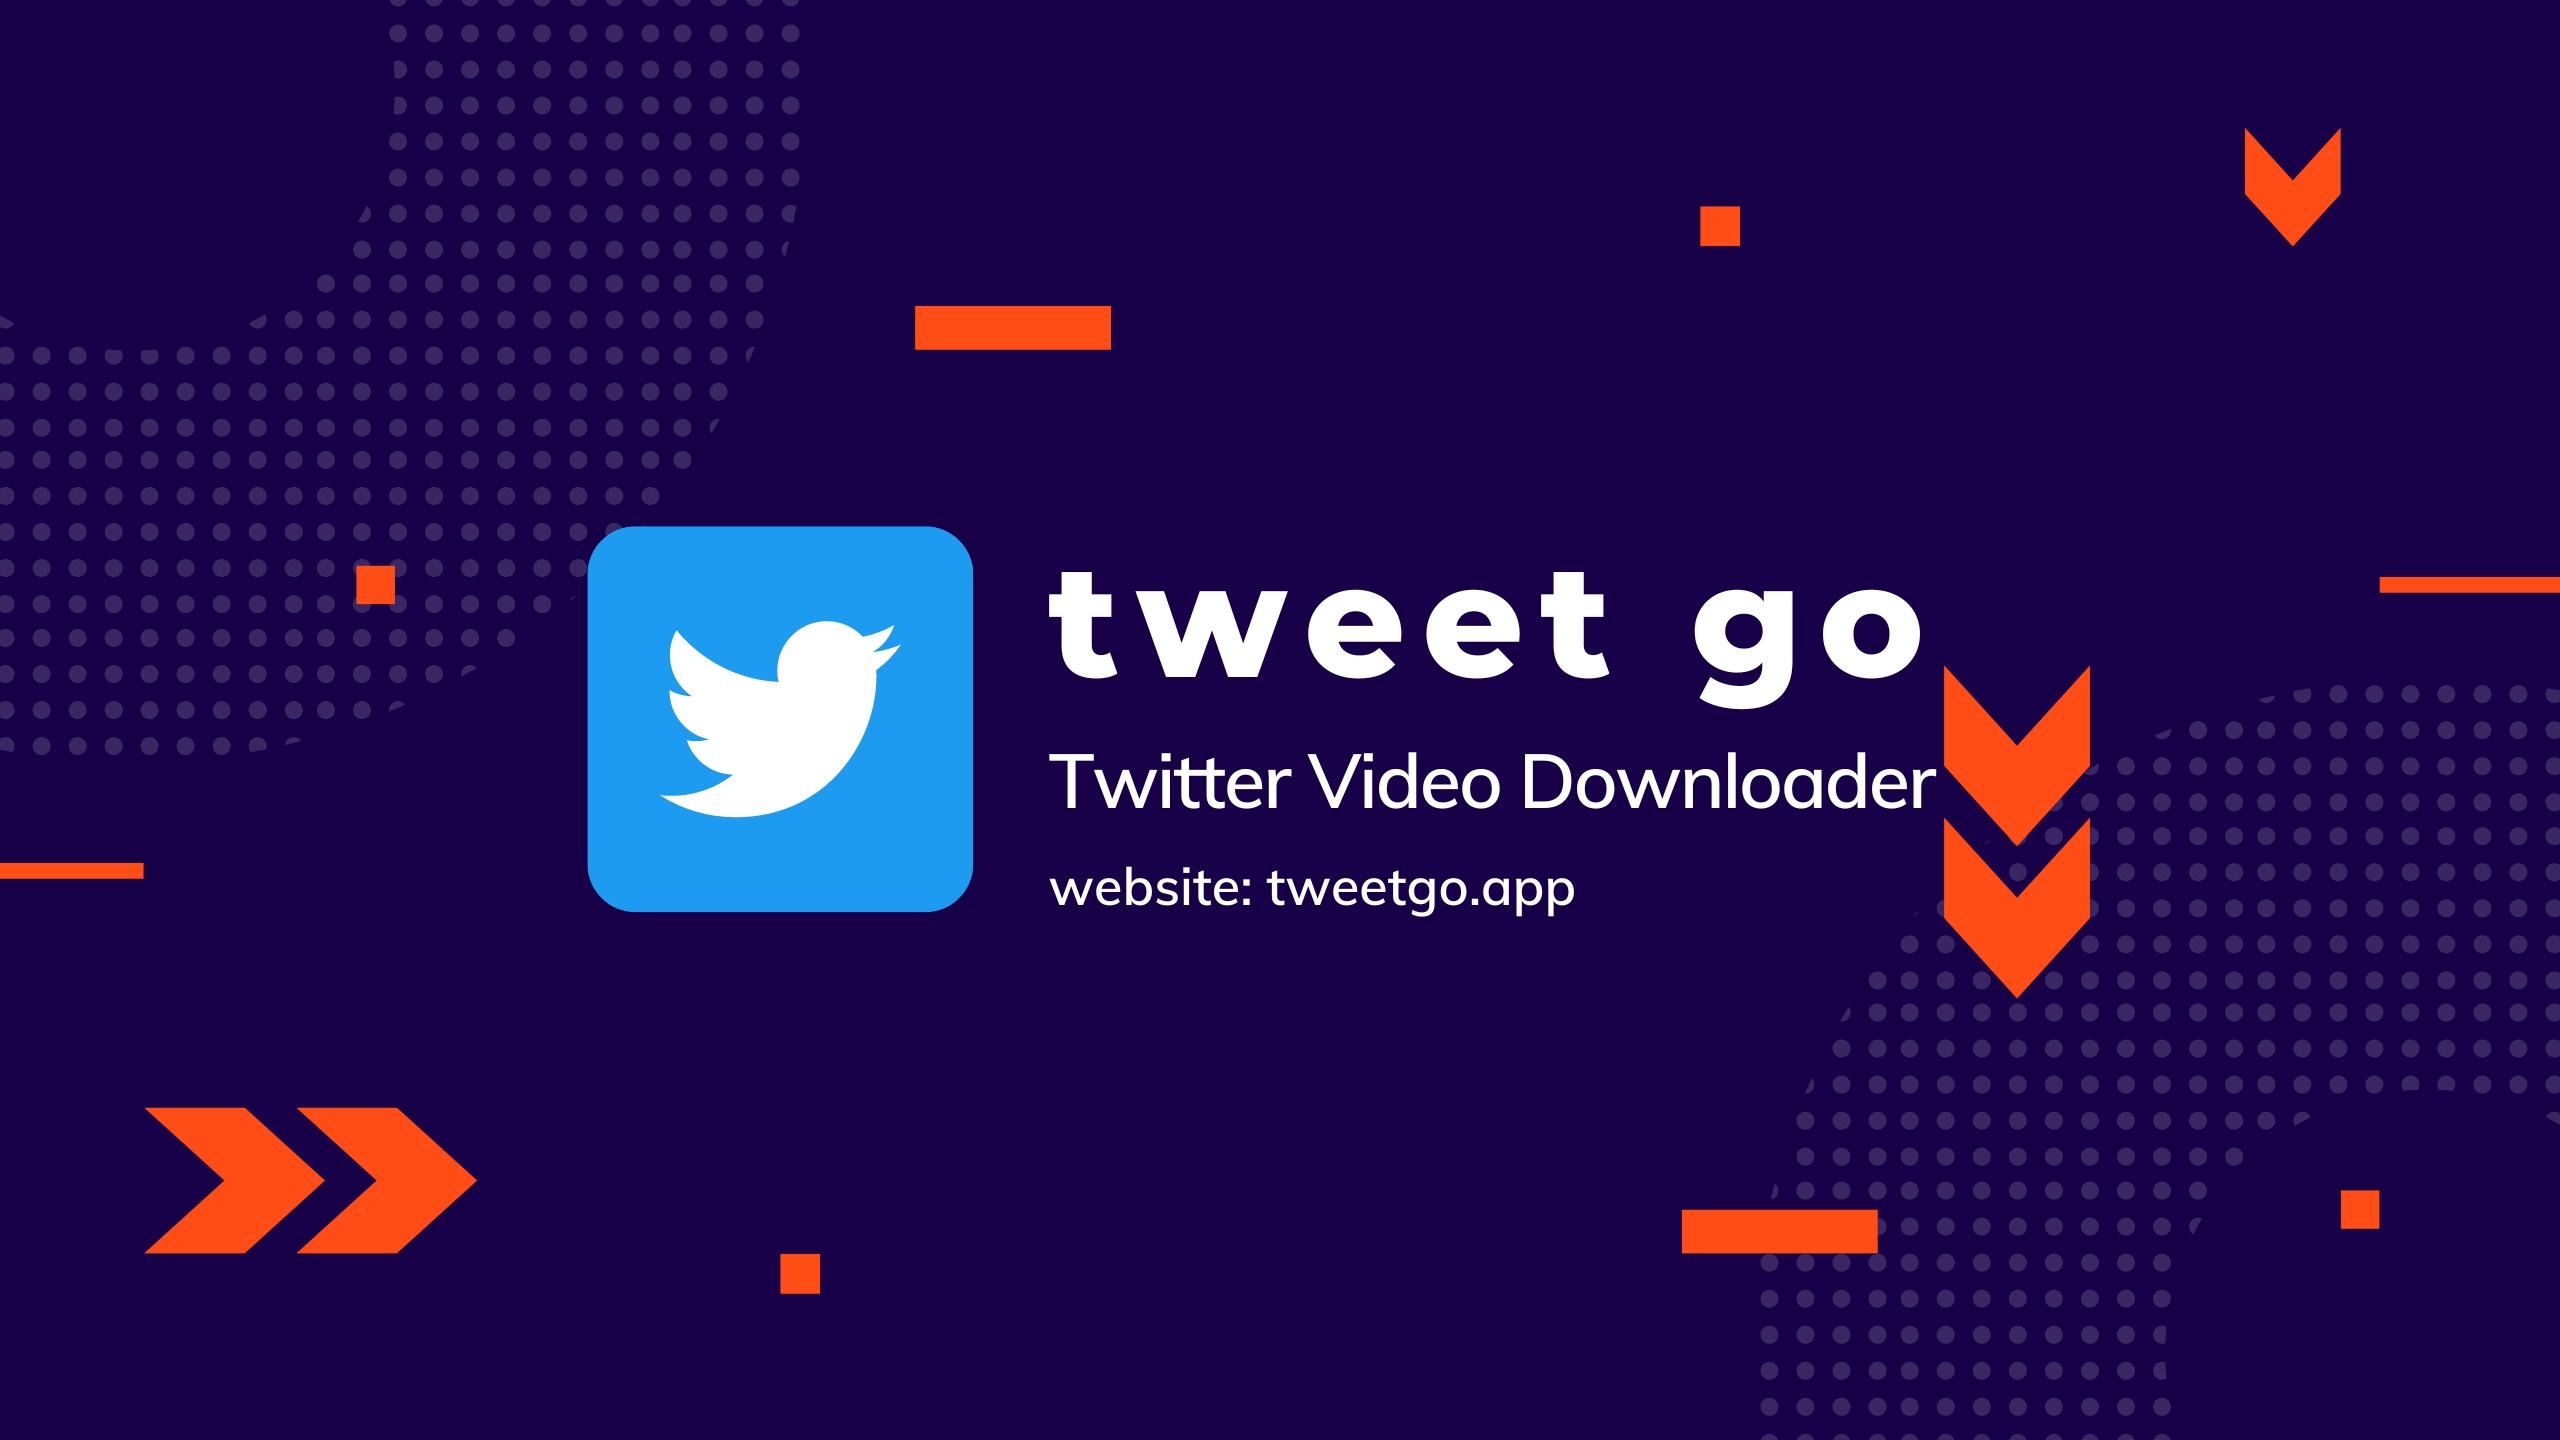 TweetGo (tweetgo.app) - Twitter Video Downloader